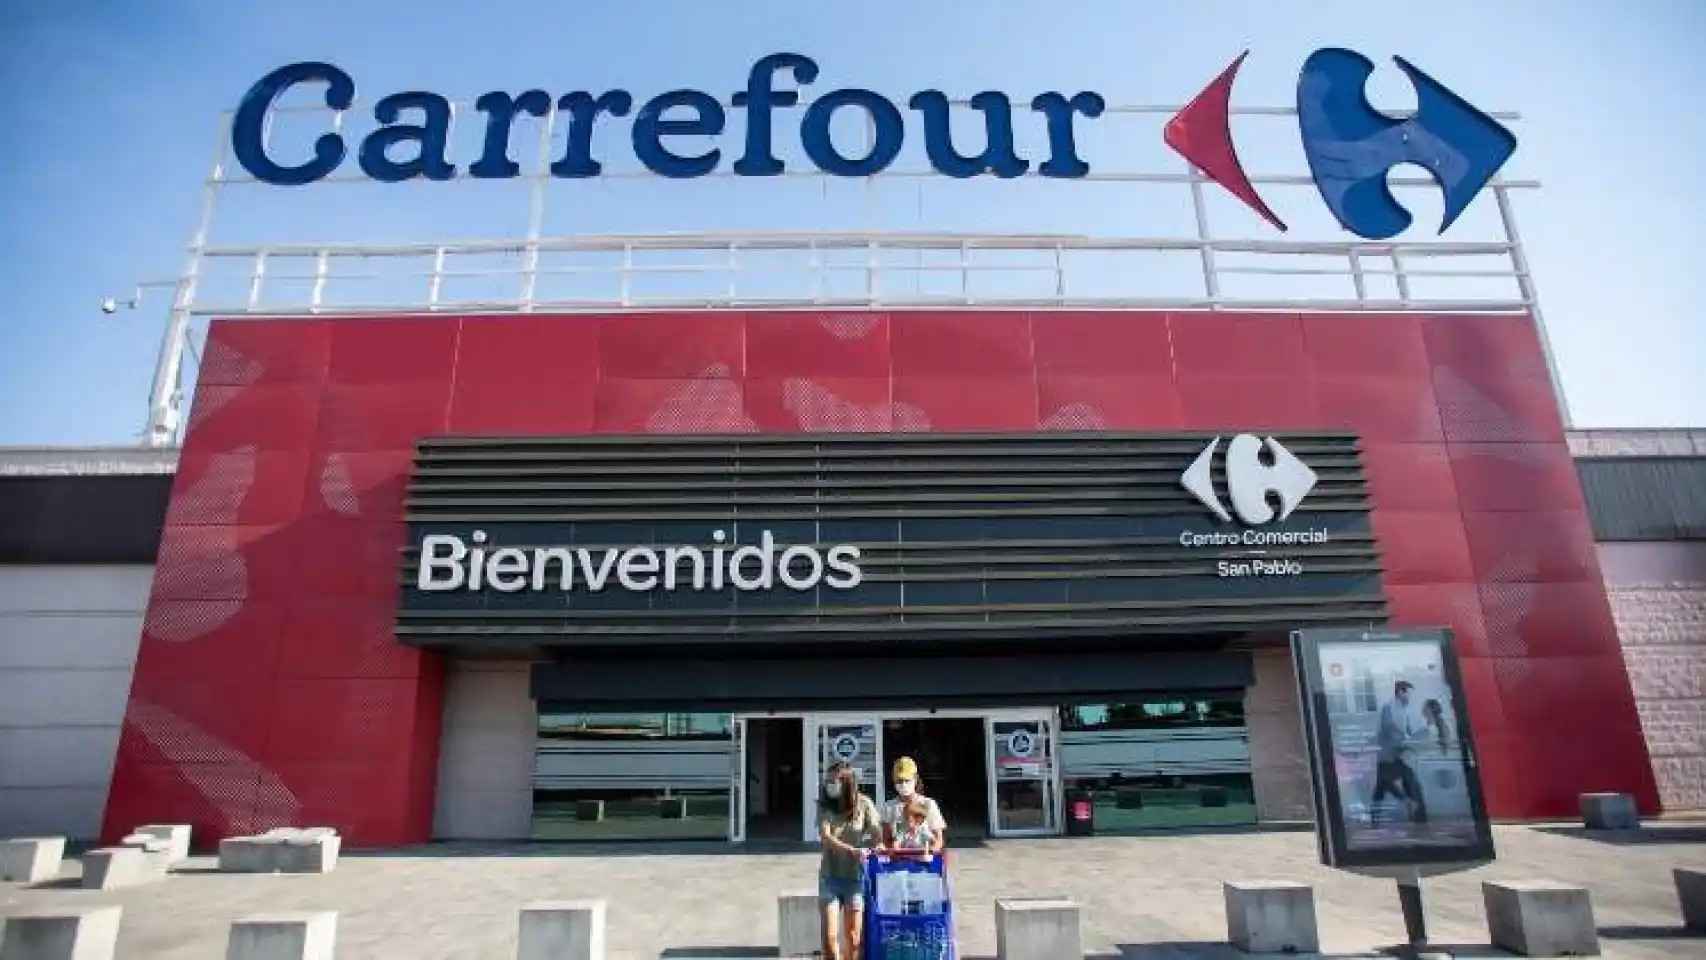 El último chollo de Carrefour ideal para el invierno: botas de agua unisex por tan solo 9,99€